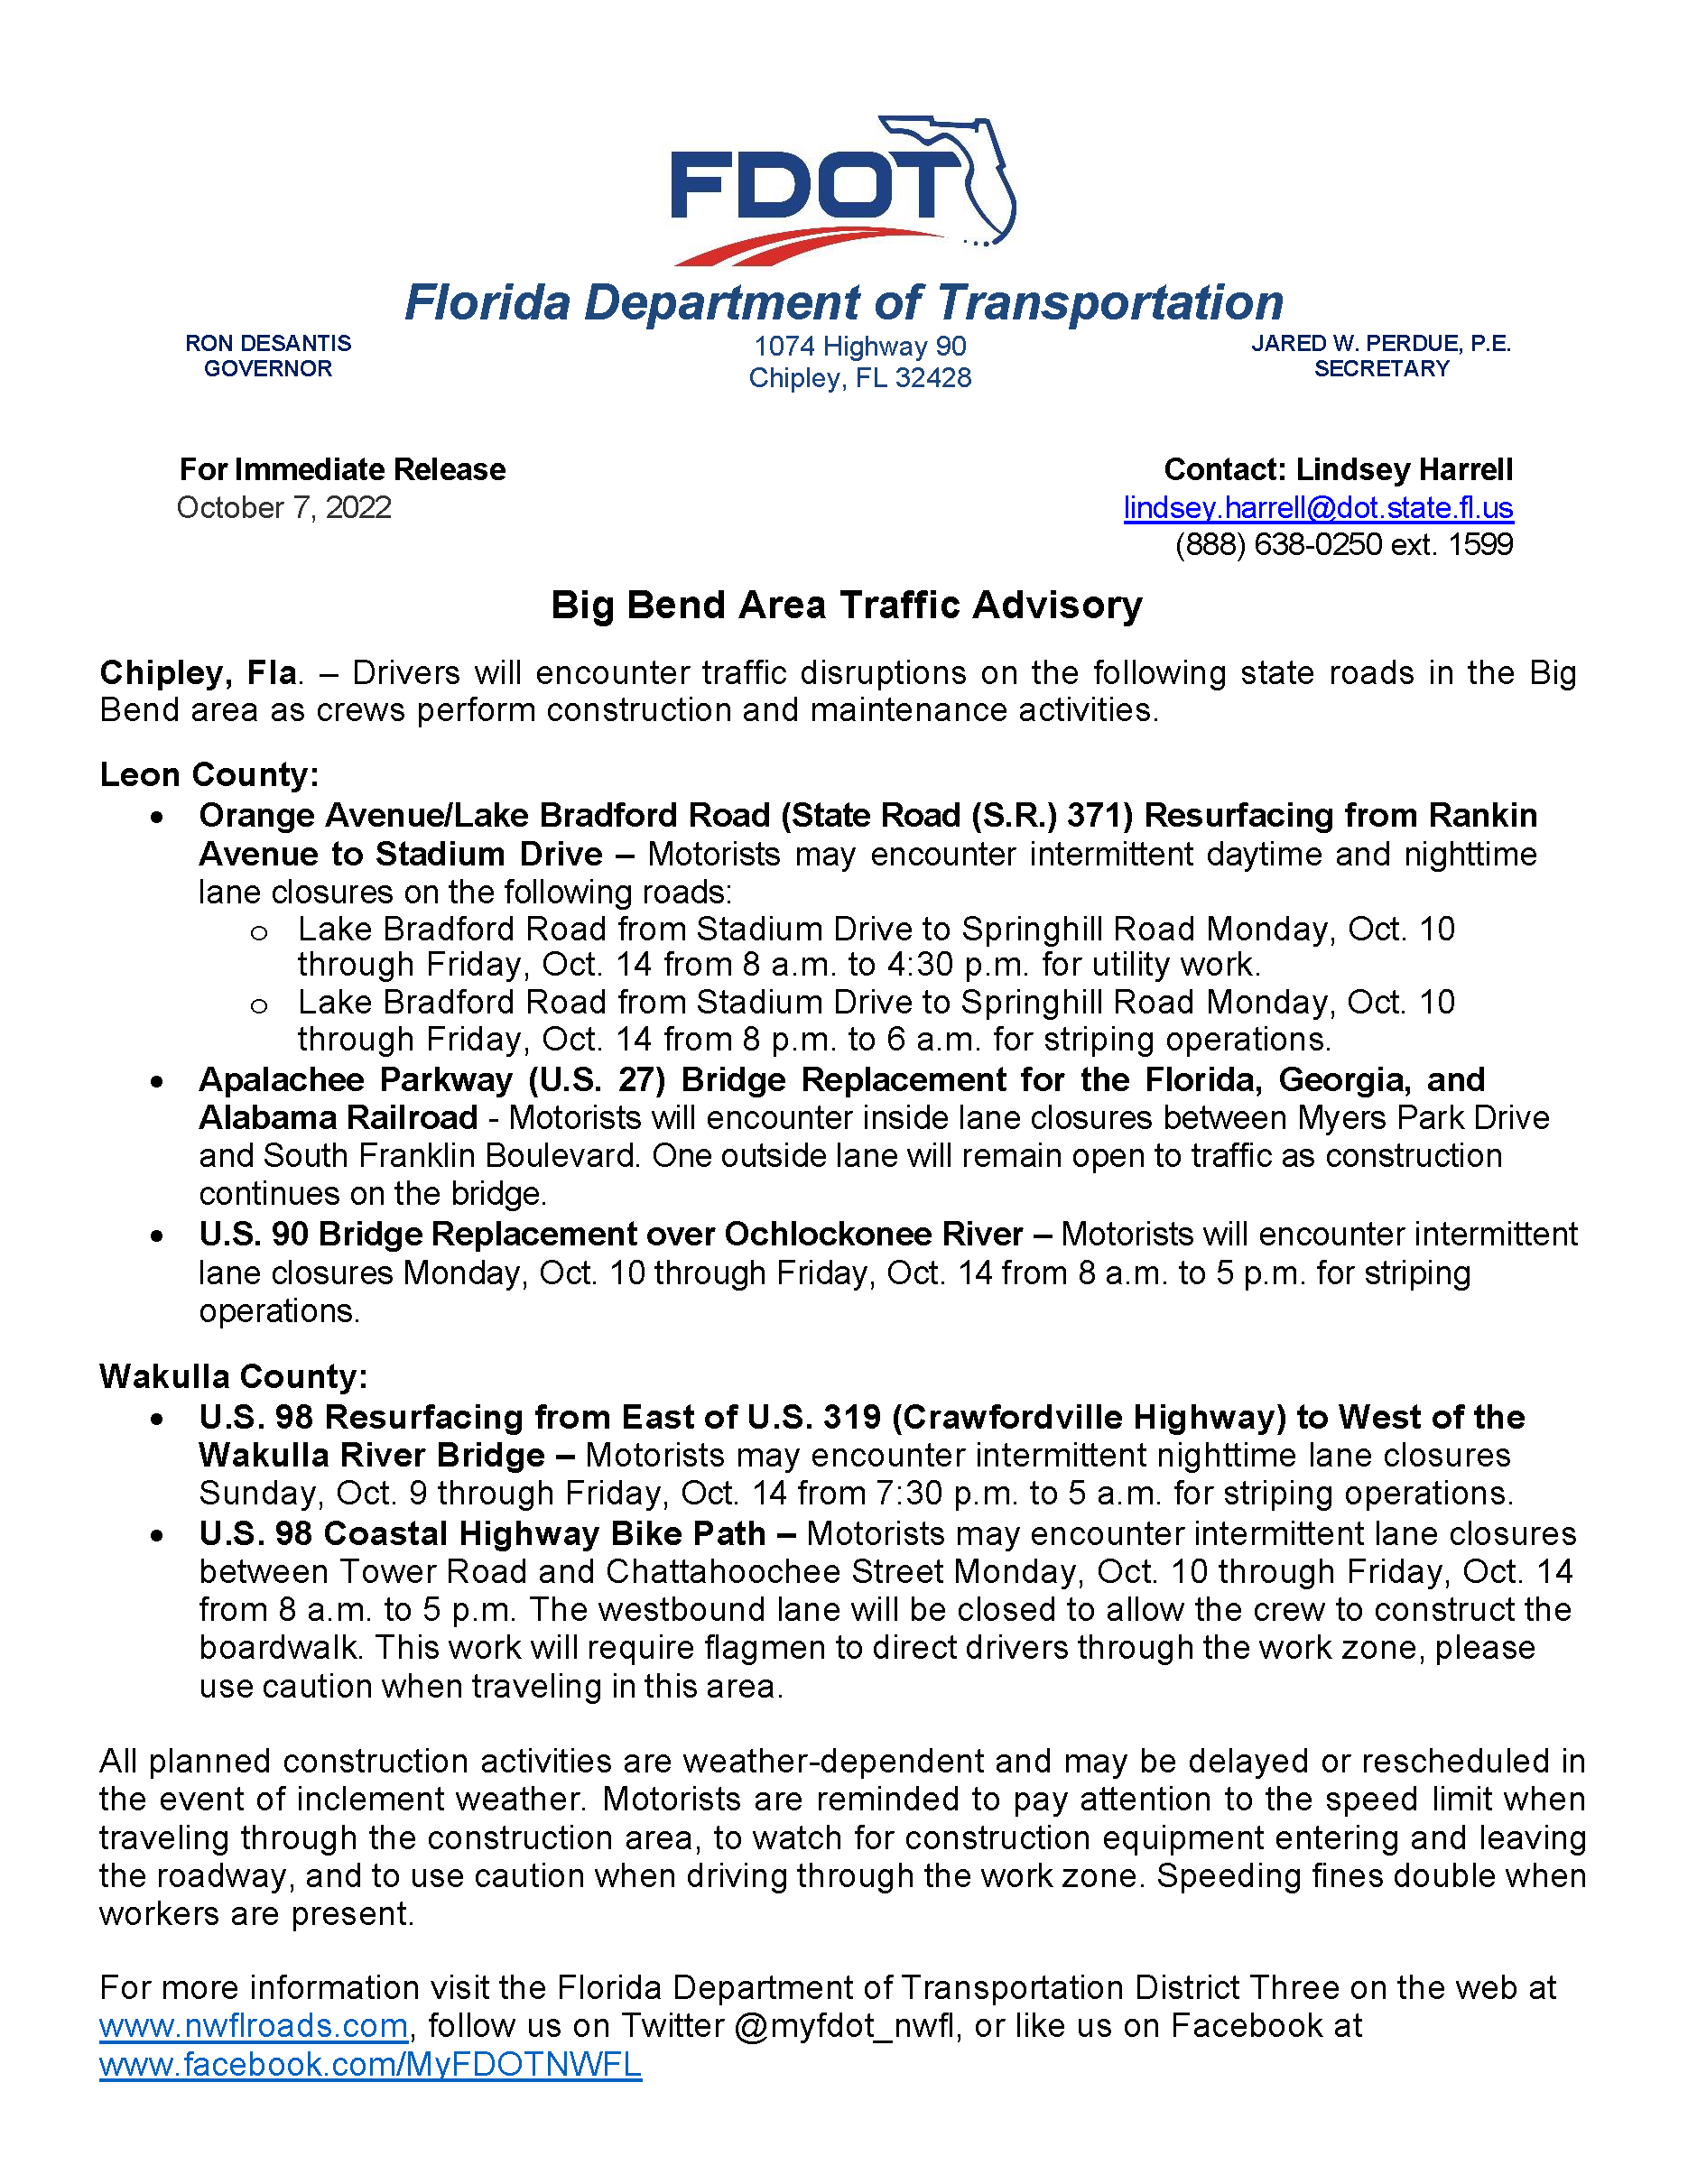 FINAL Big Bend Traffic Advisory 10072022_Page_1